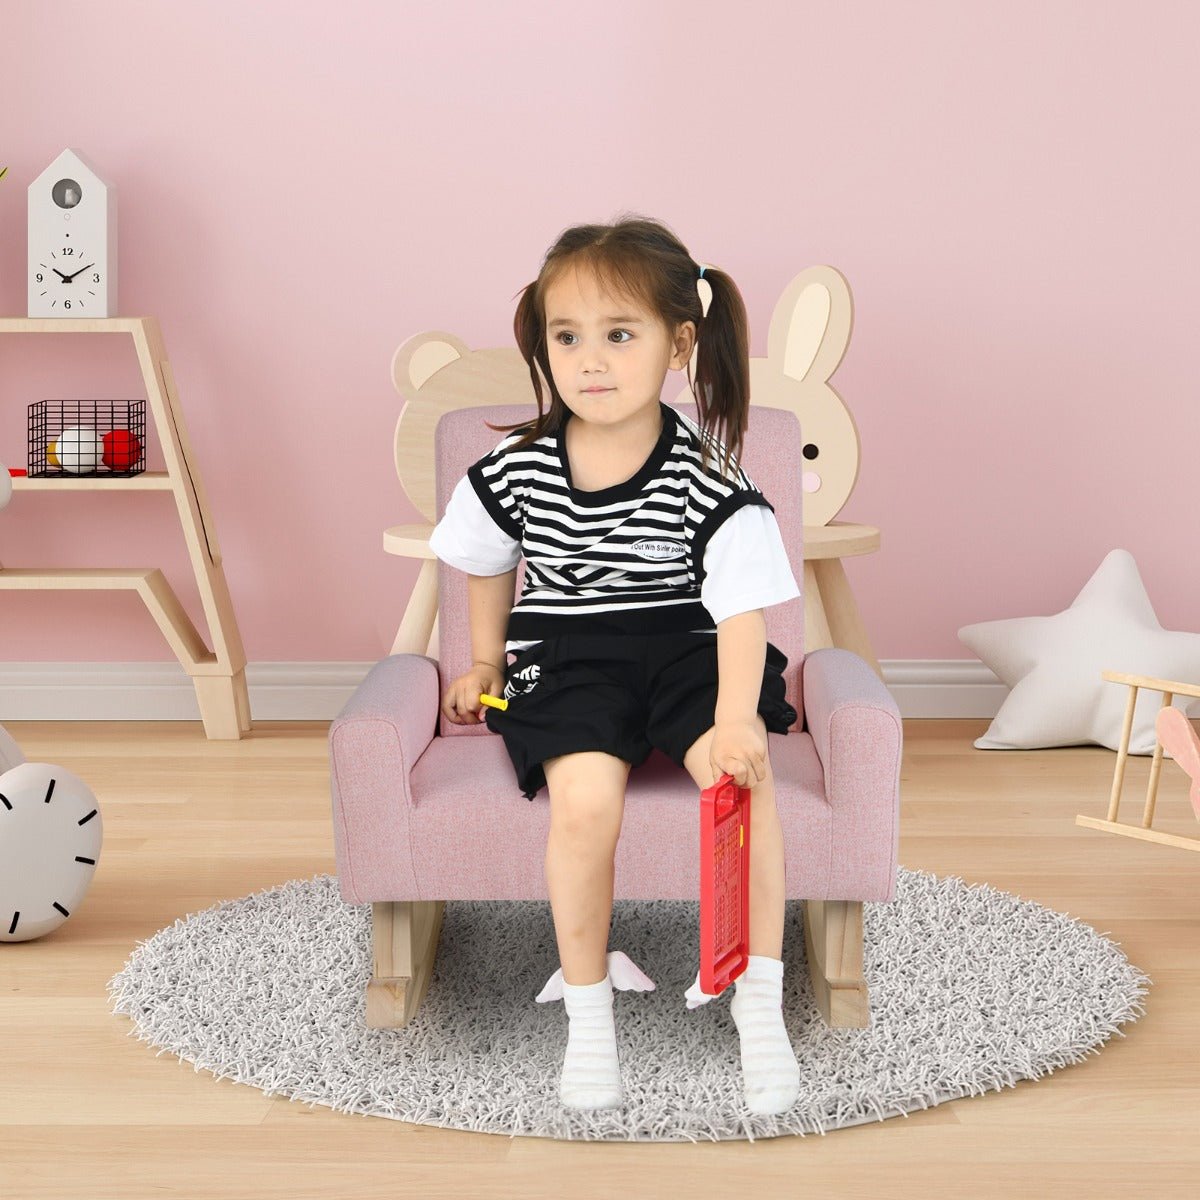 Pink Kids Rocking Seat - Wood Legs, Anti-tipping Design, Safe and Charming